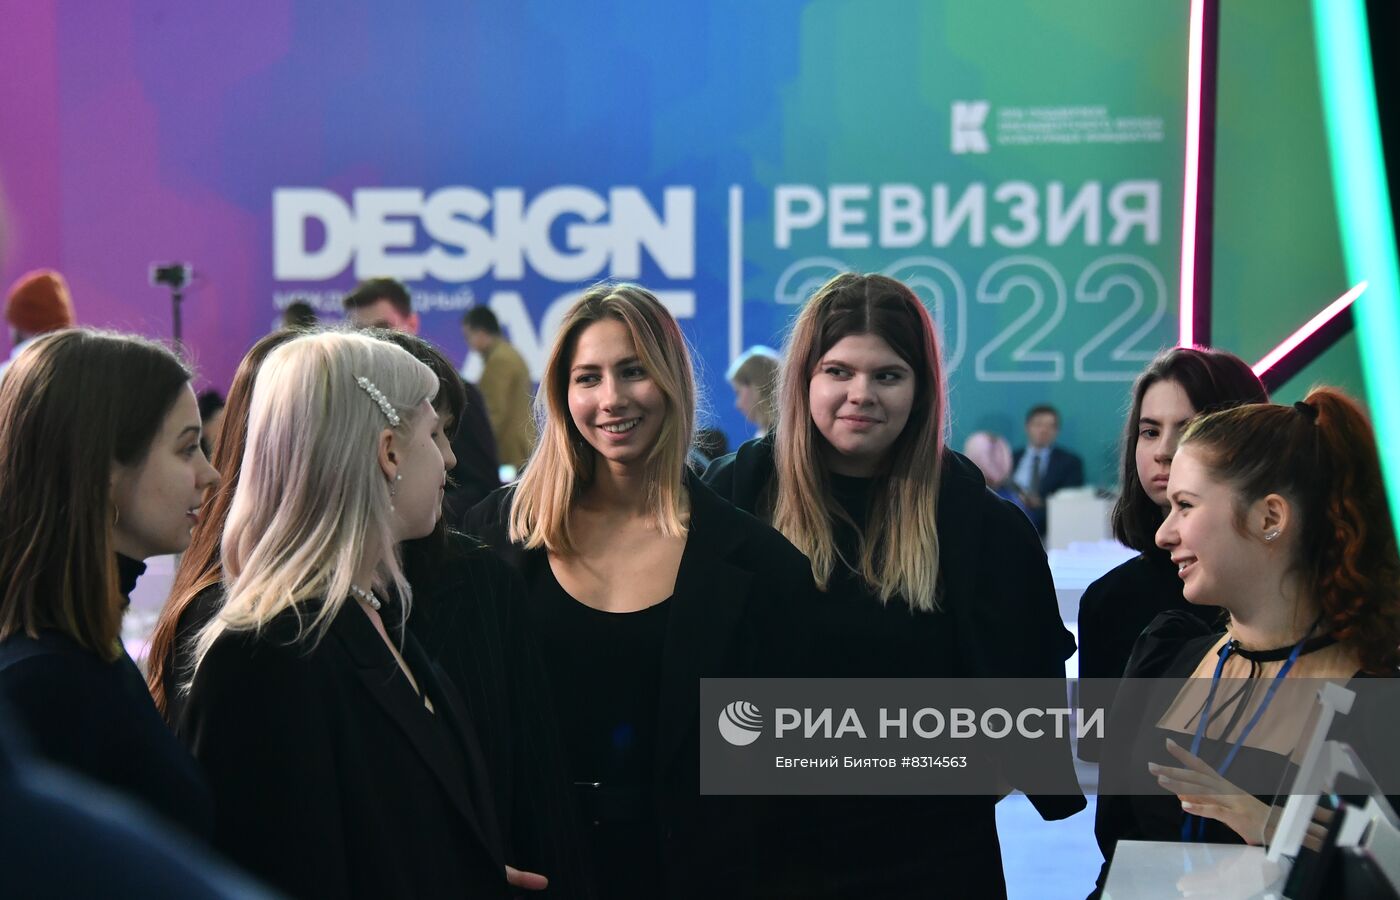 Международный фестиваль дизайна Design Act